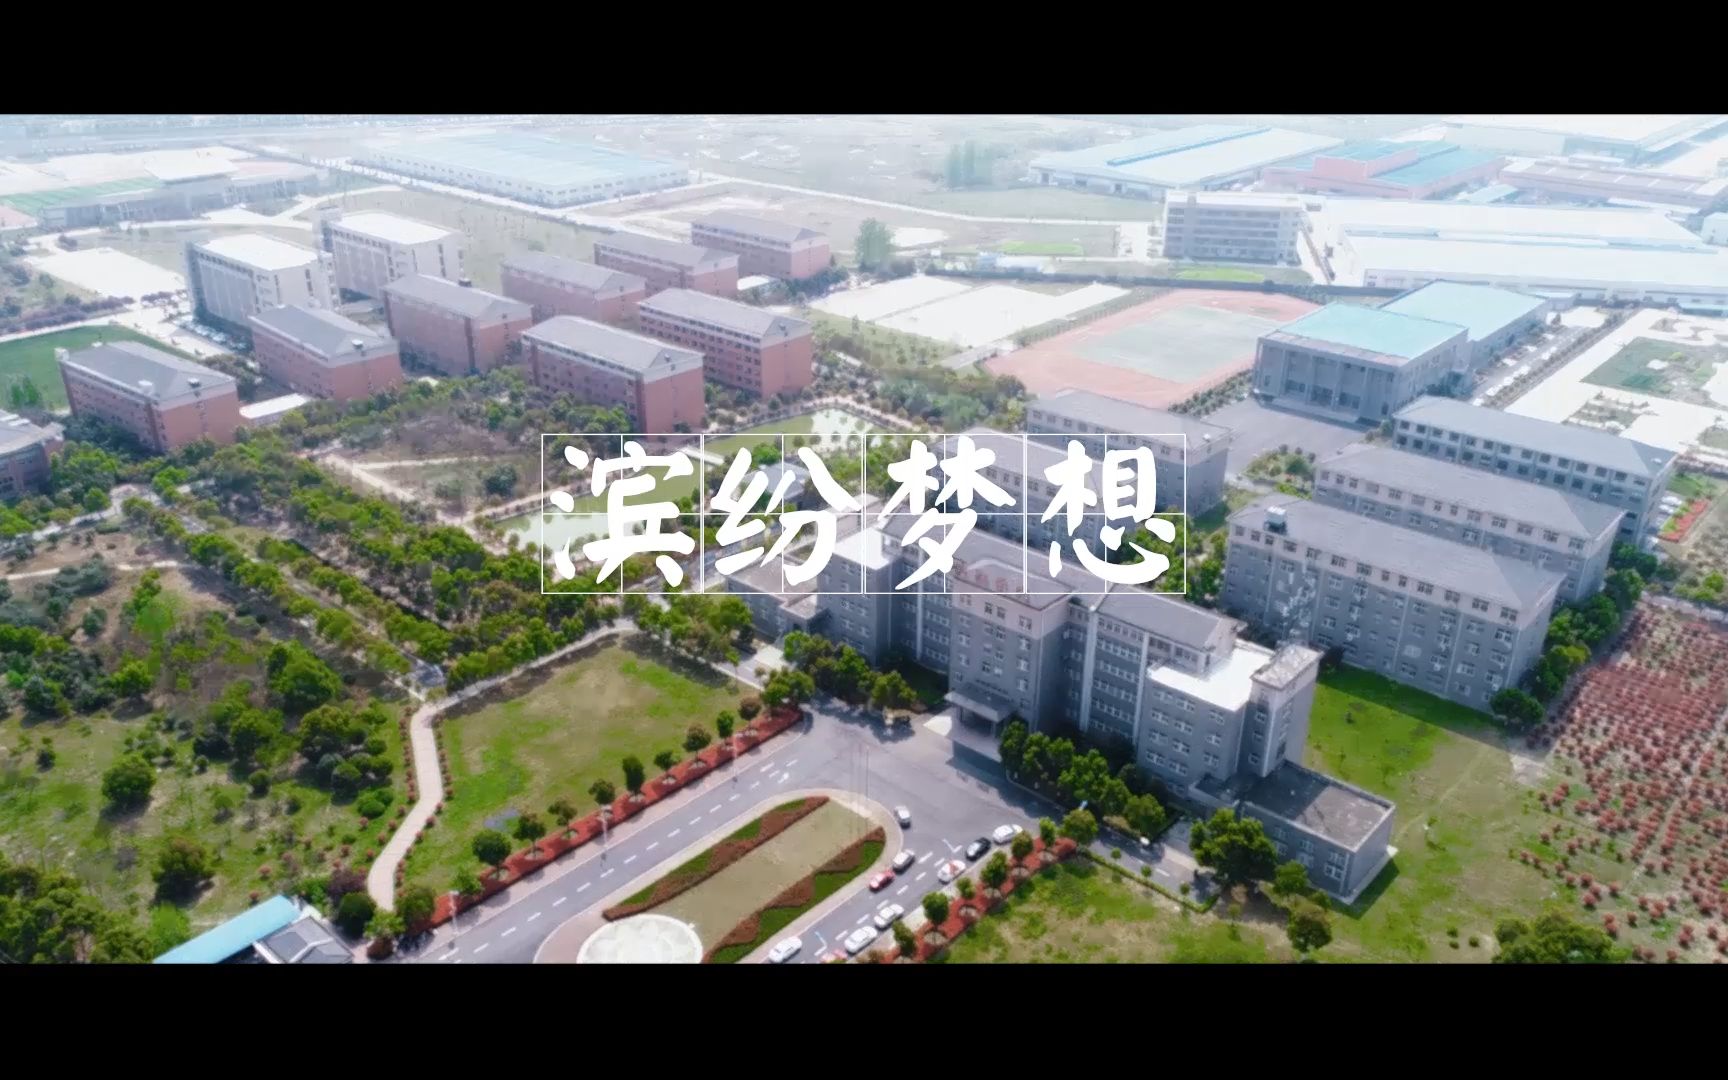 【2018】校园宣传片:合肥滨湖职业技术学院